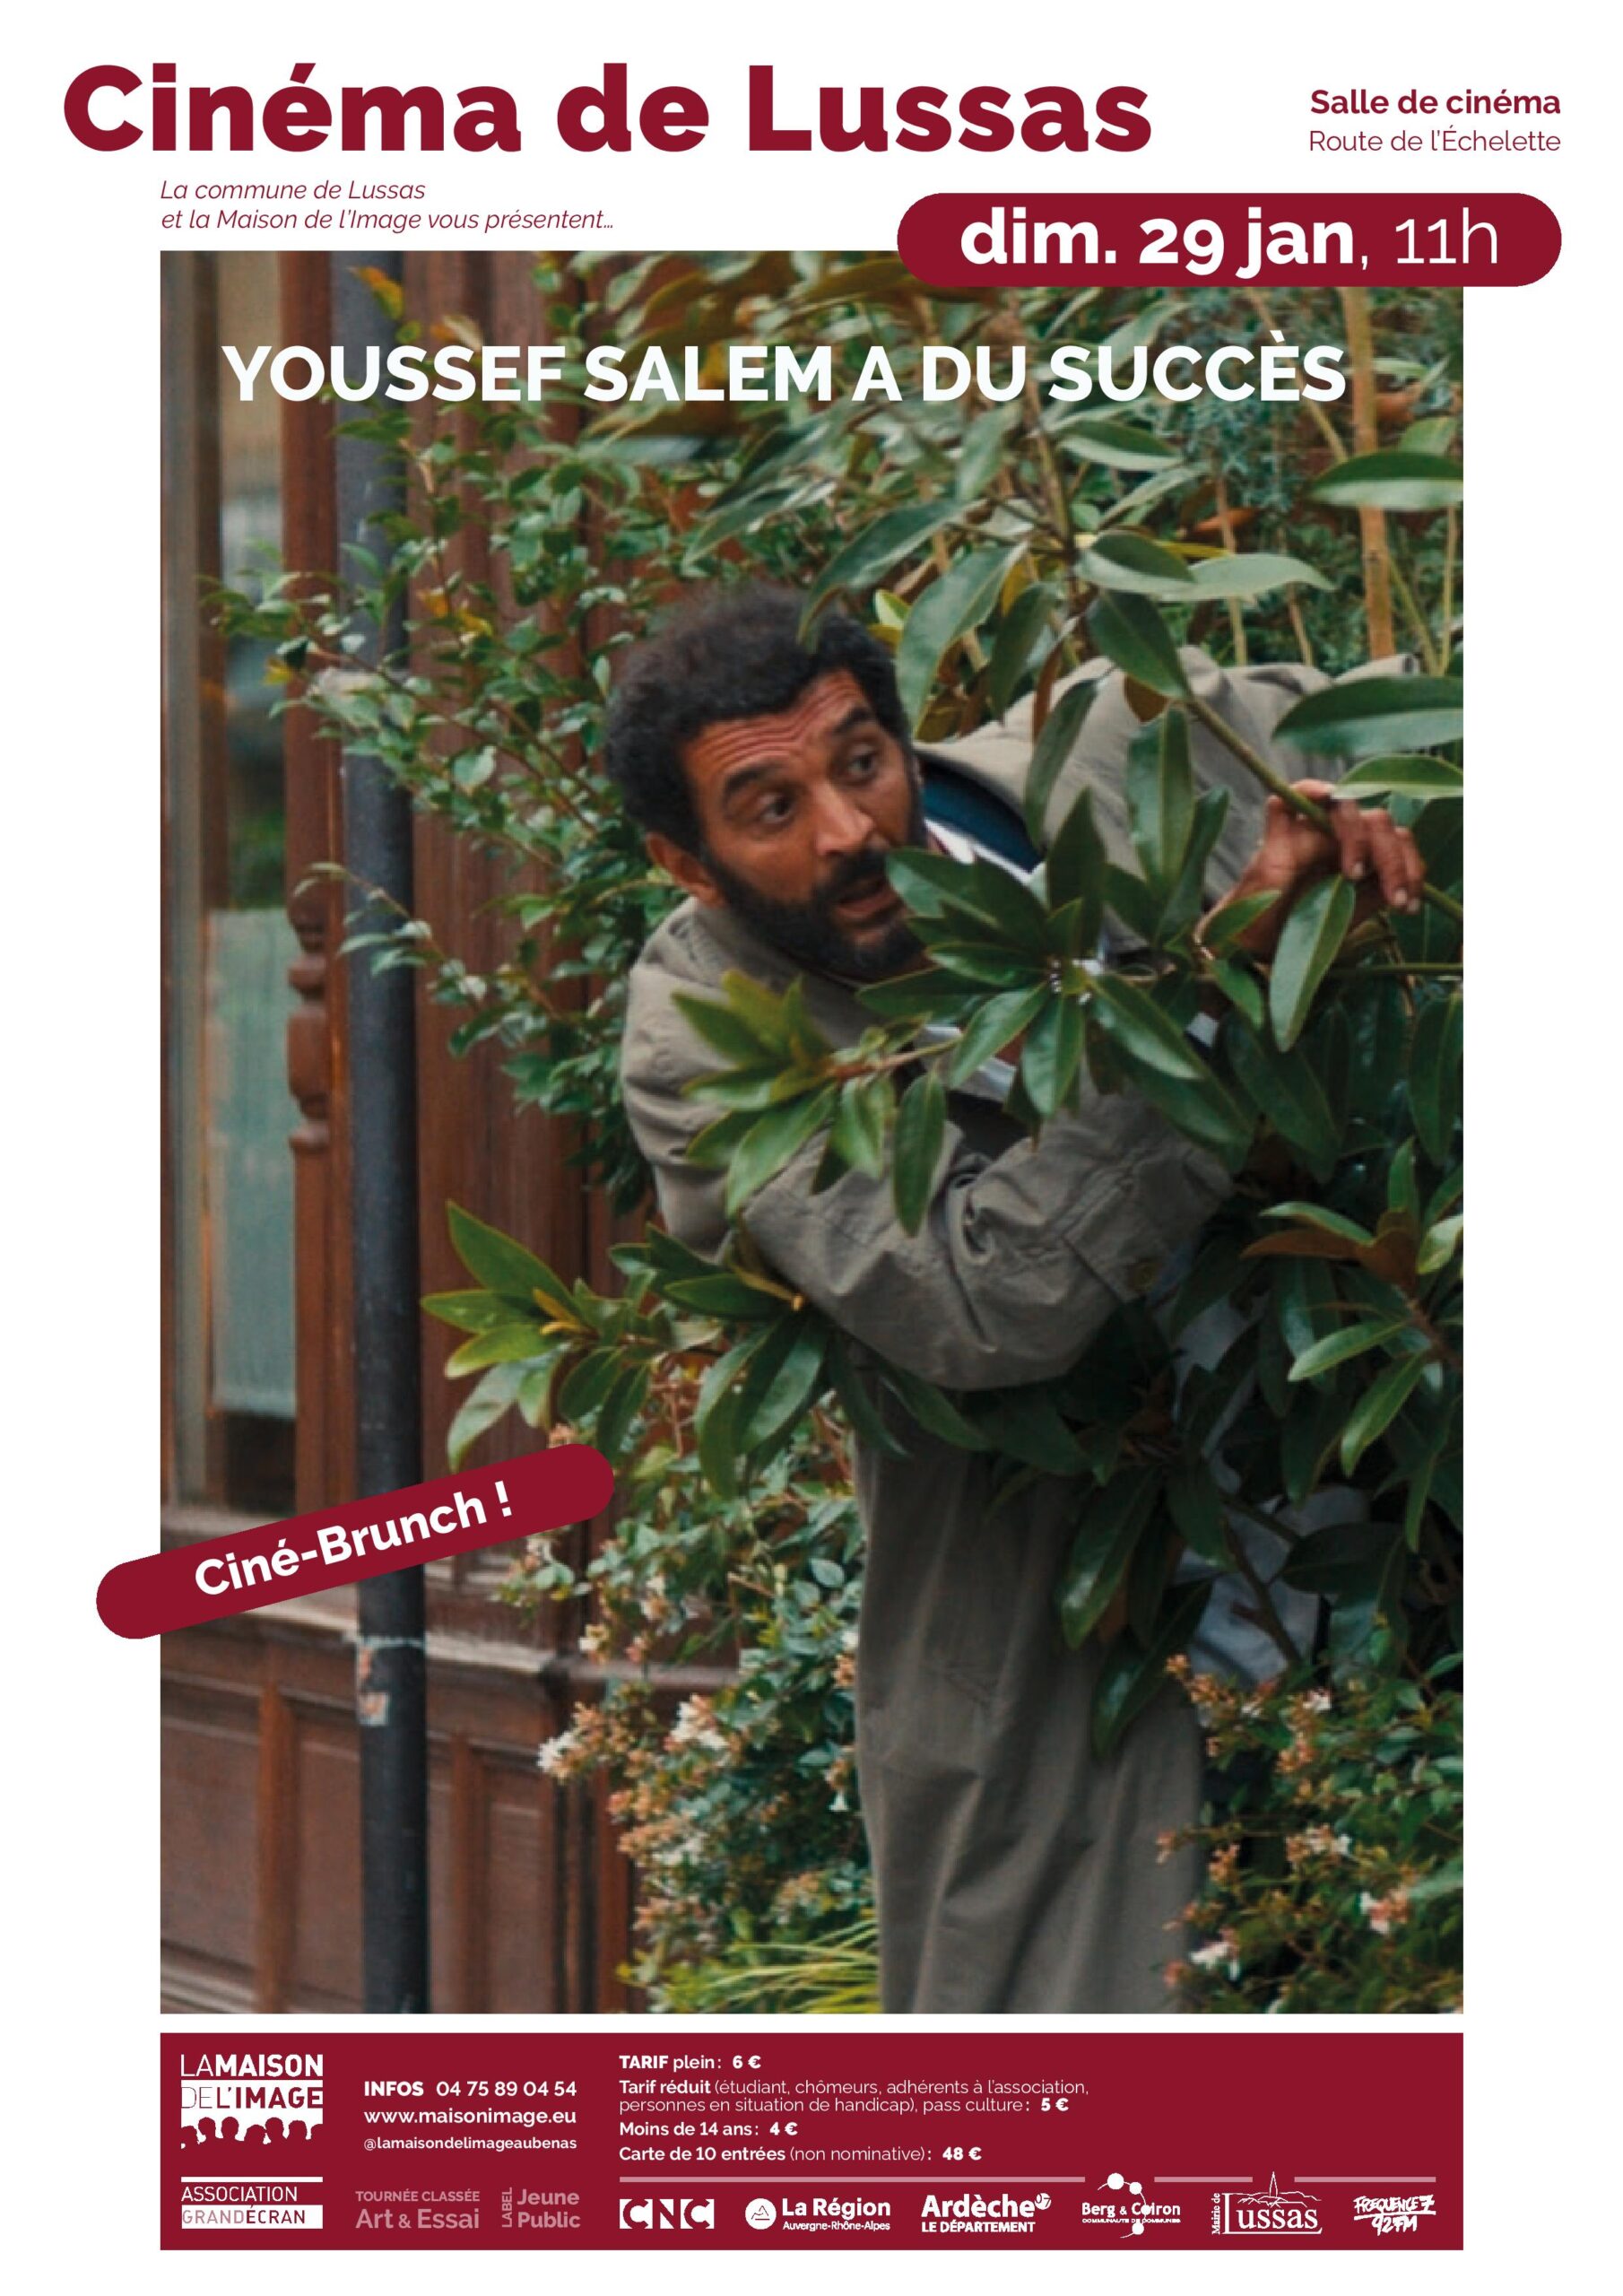 Ciné-brunch avec Youssef Salem a du succès à Lussas